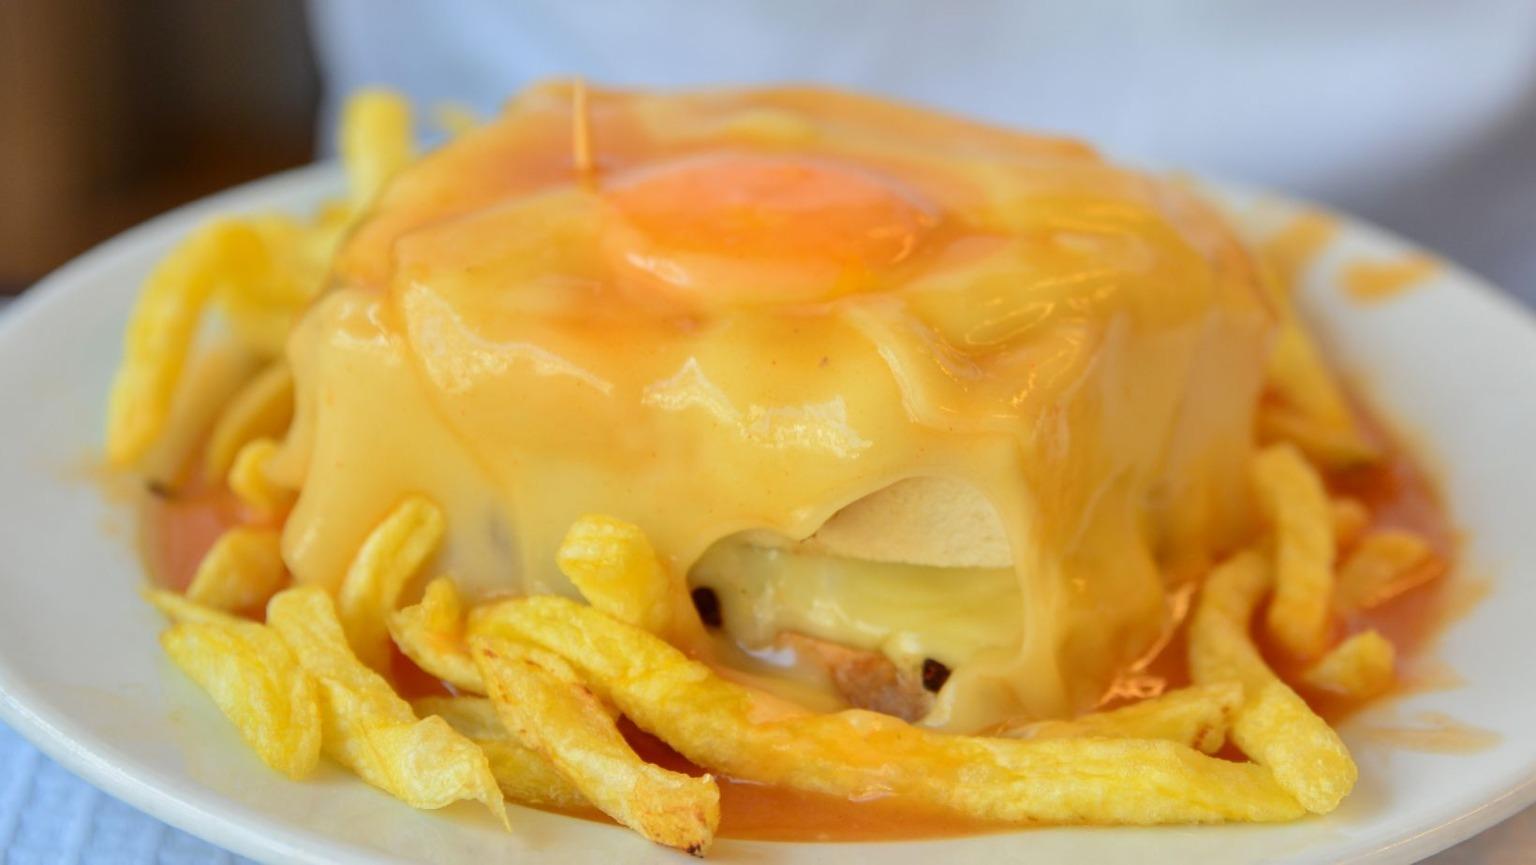 Un plato chisporroteante con un delicioso bocadillo de Francesinha, cubierto con queso fundido, un huevo frito y bañado en una rica salsa de tomate picante.